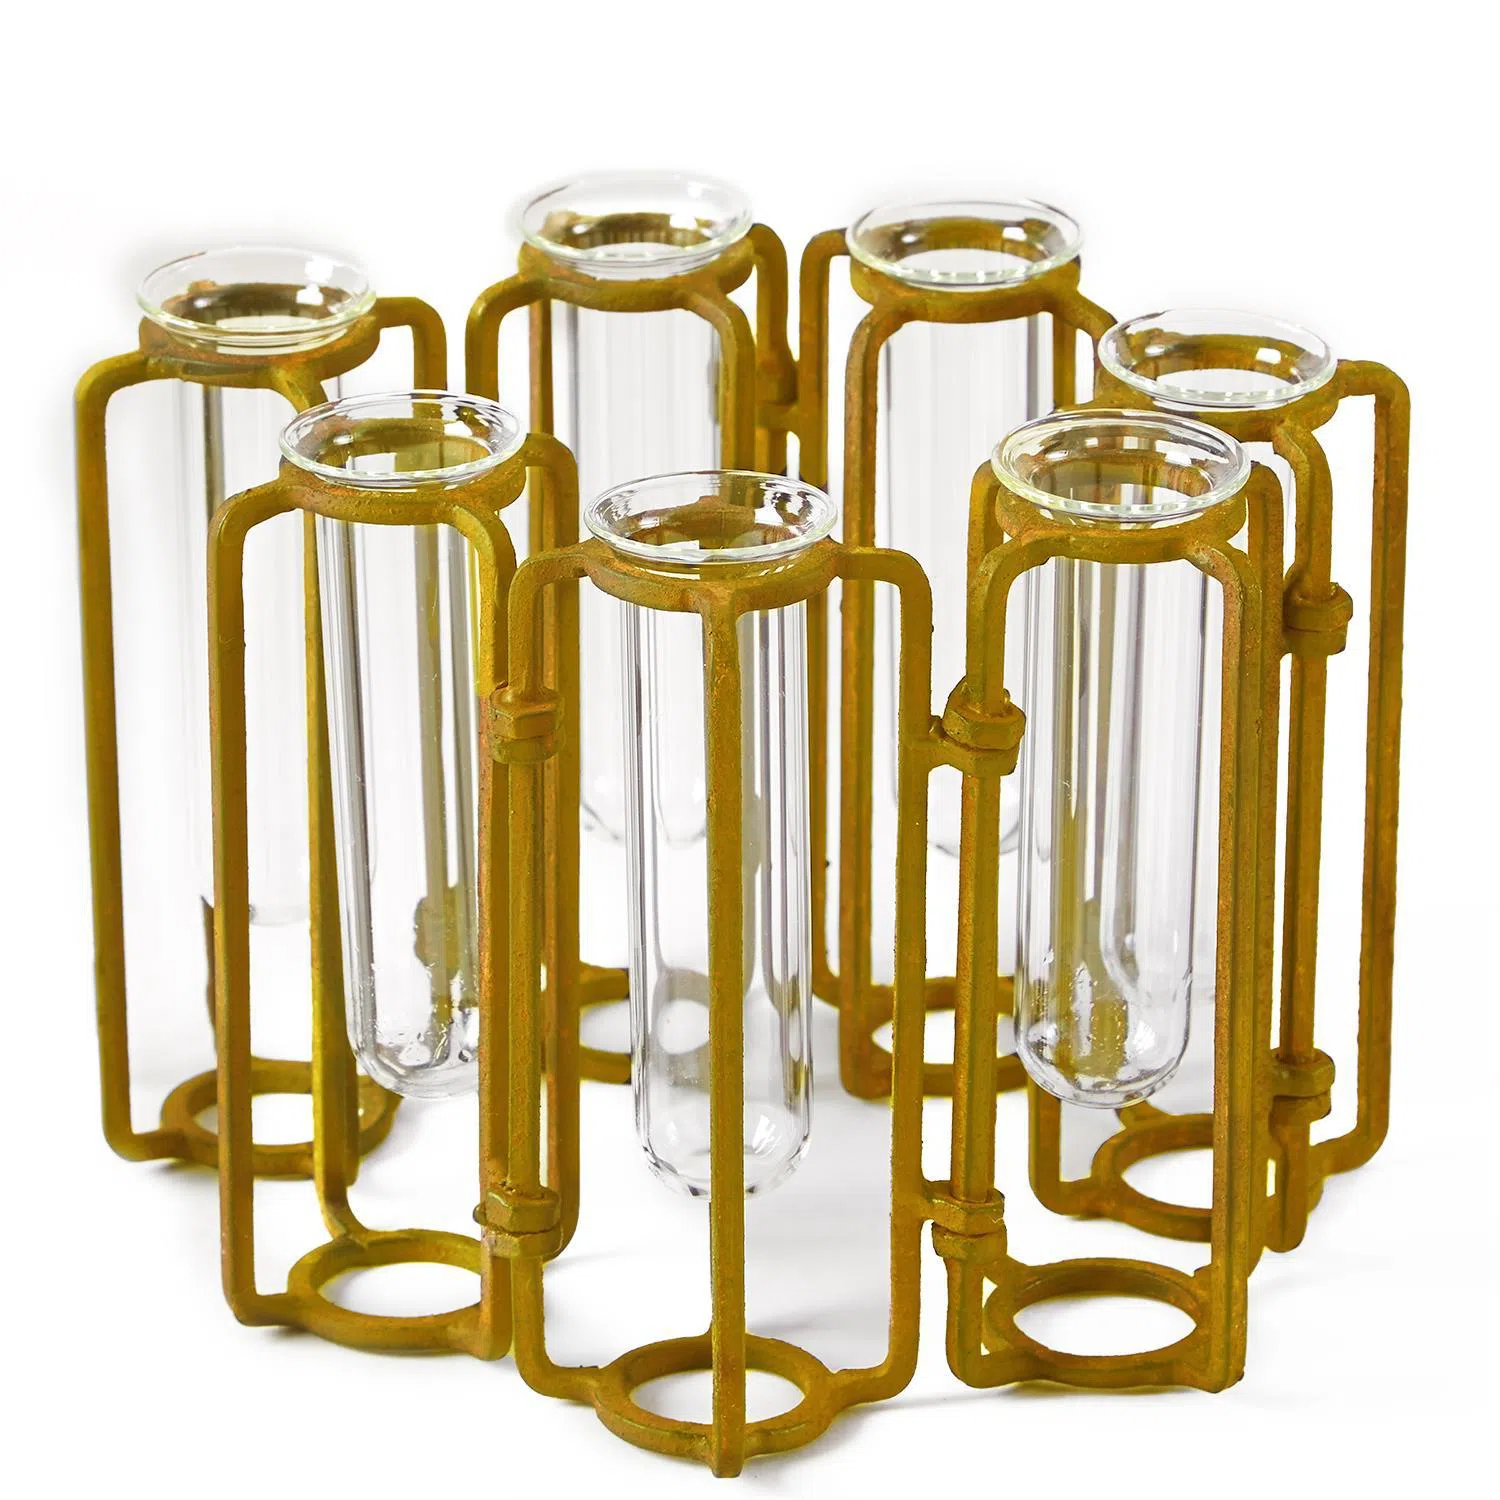 Lavoisier Set of 7 Hinged Flower Vases - Stainless Steel/Glass